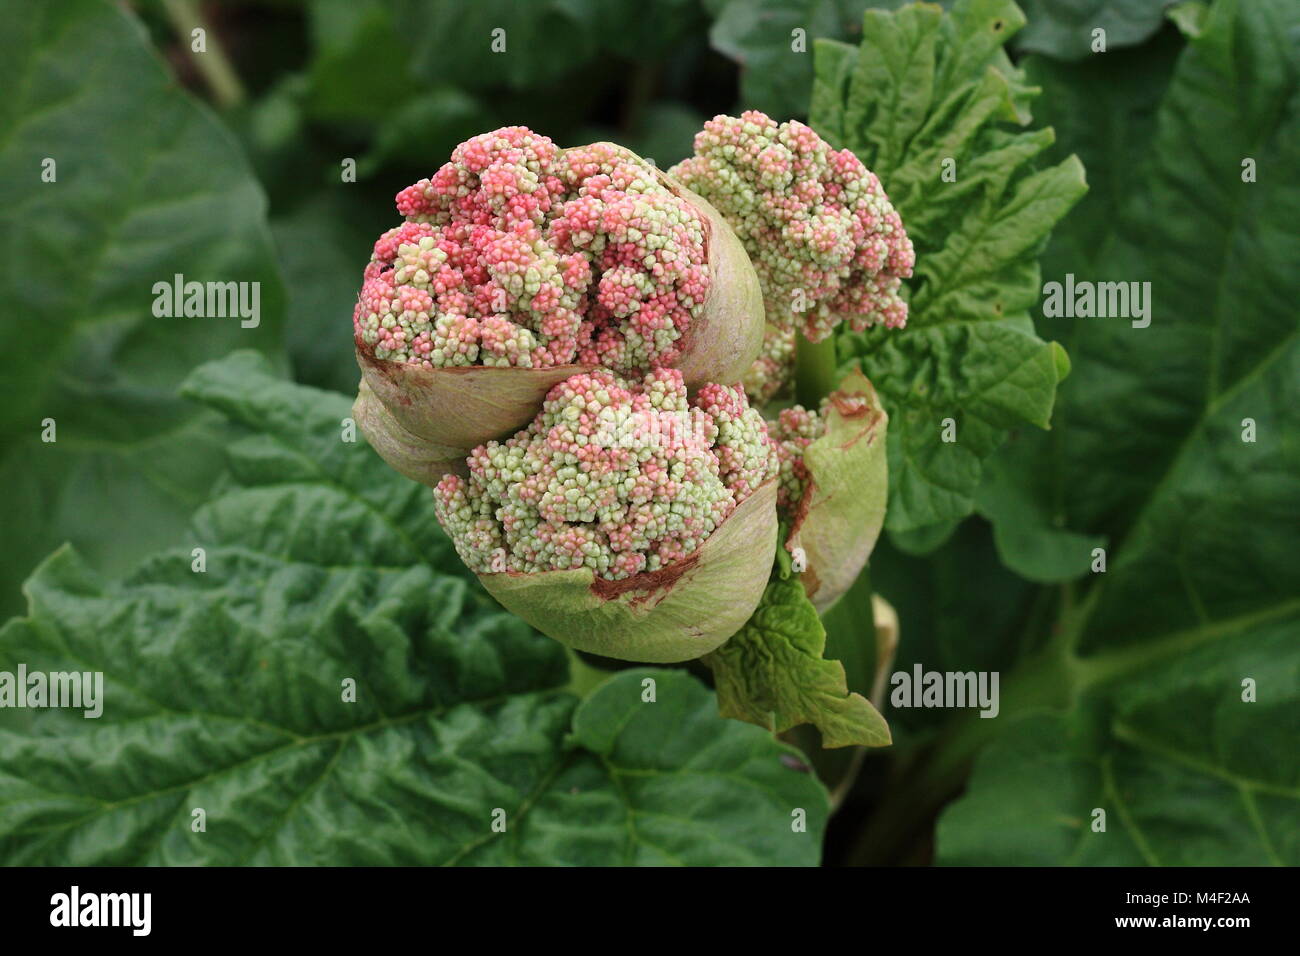 Rhubarb blossom Stock Photo